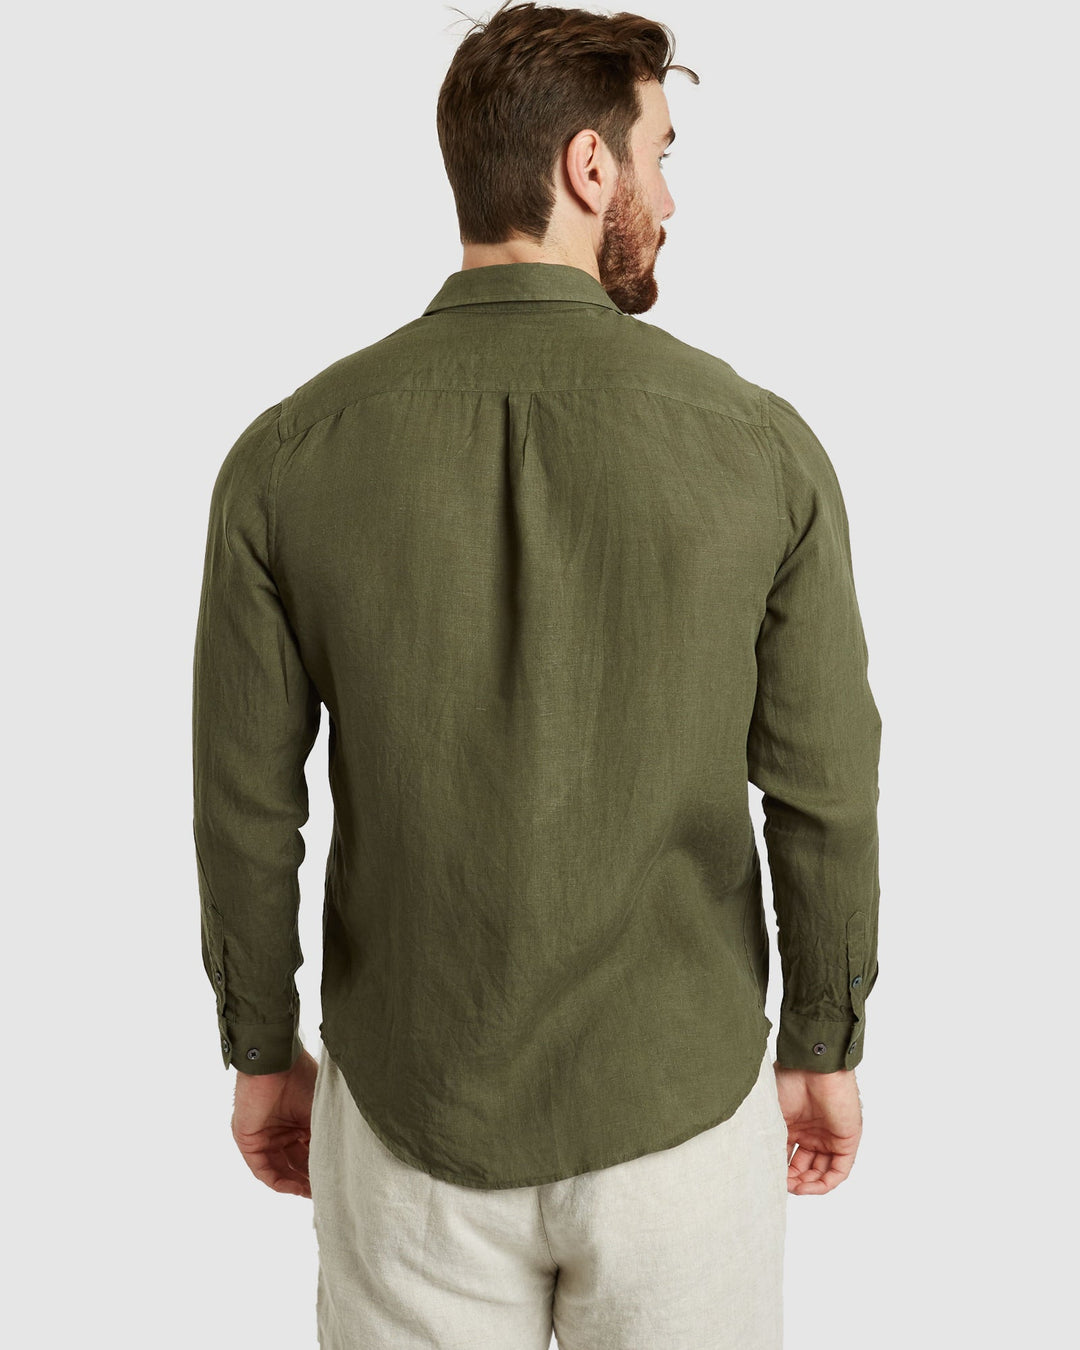 Tulum Green Linen Shirt Long Sleeve - Casual Fit